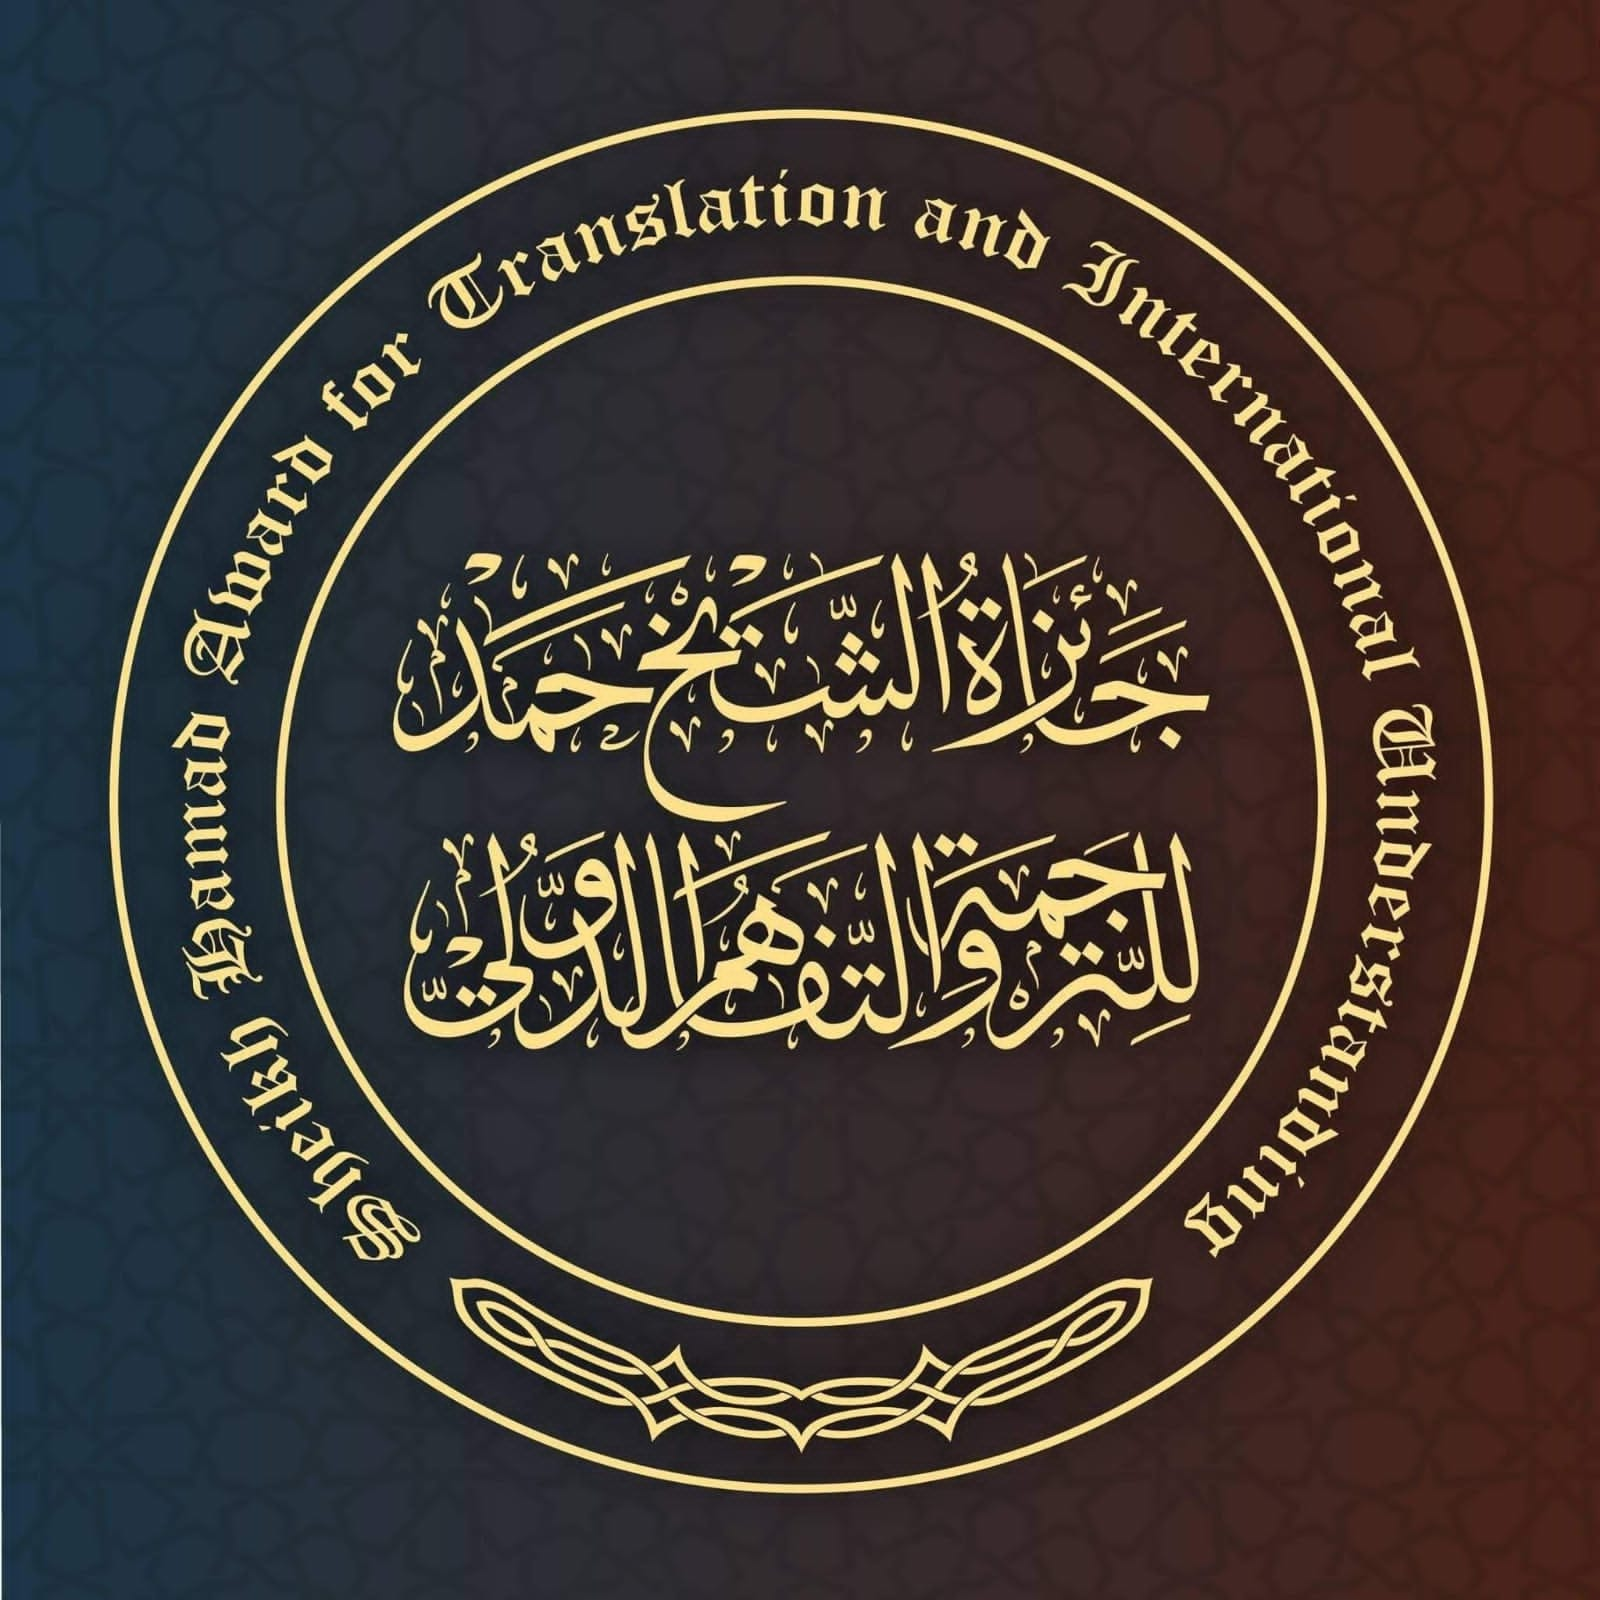 6 لغات جديدة تدخل الترشيح لجائزة الشيخ حمد للترجمة والتفاهم الدولي لعام 2022